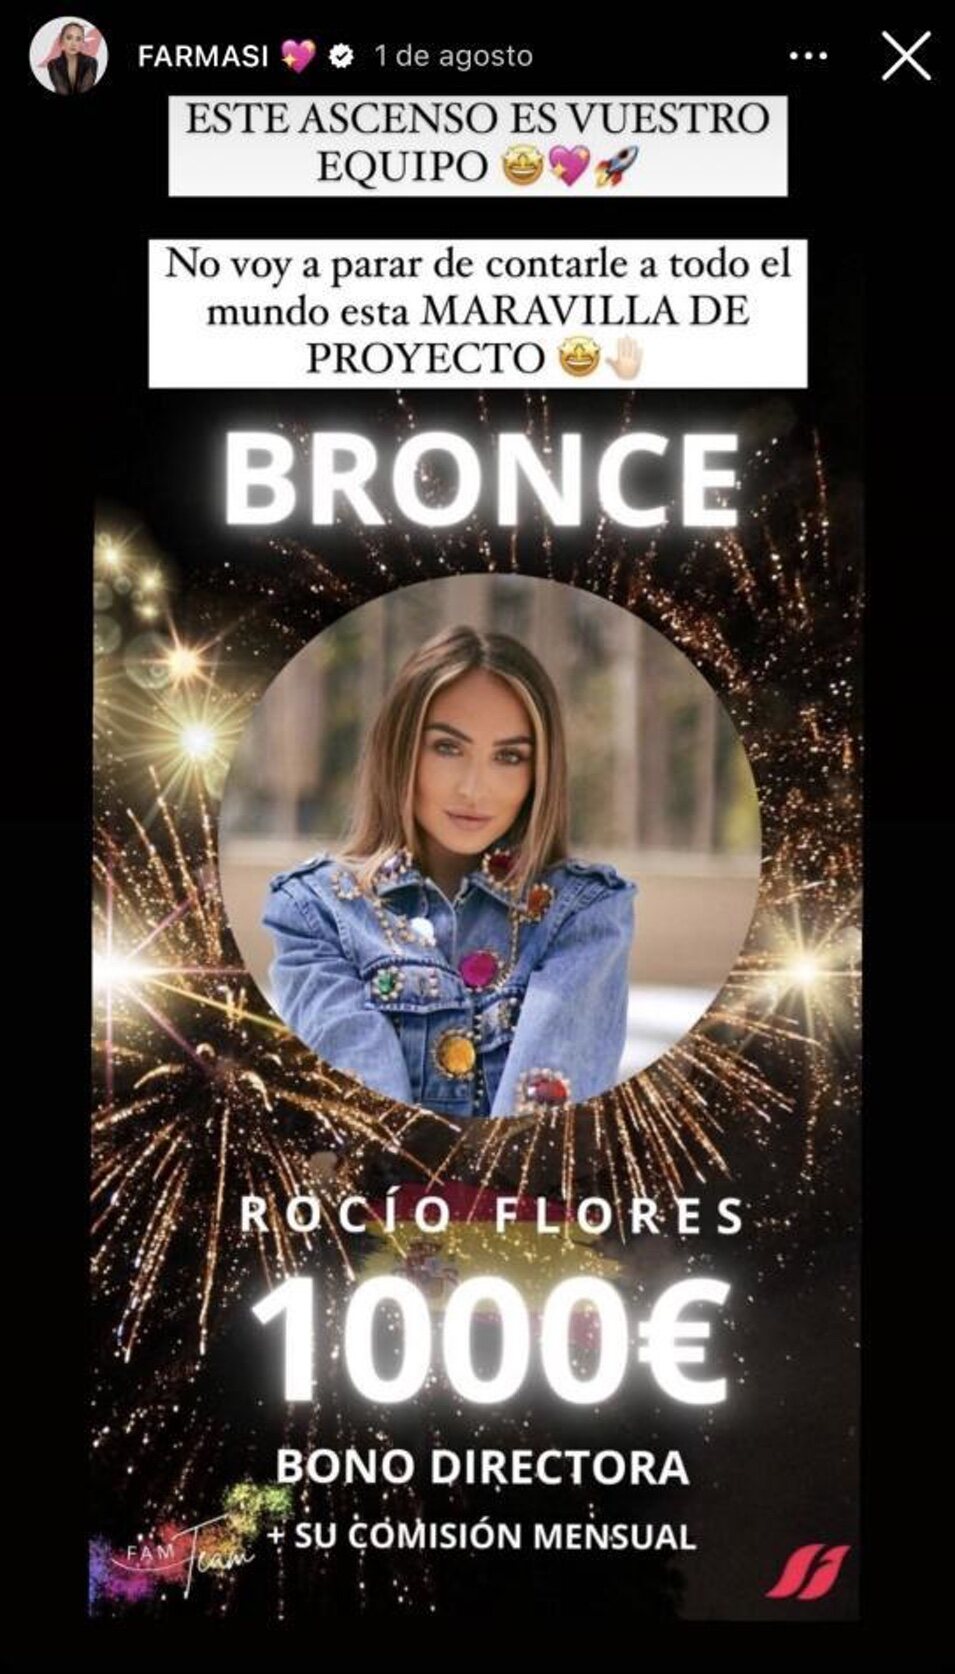 Rocío Flores comparte su ascenso en Farmasi | Instagram